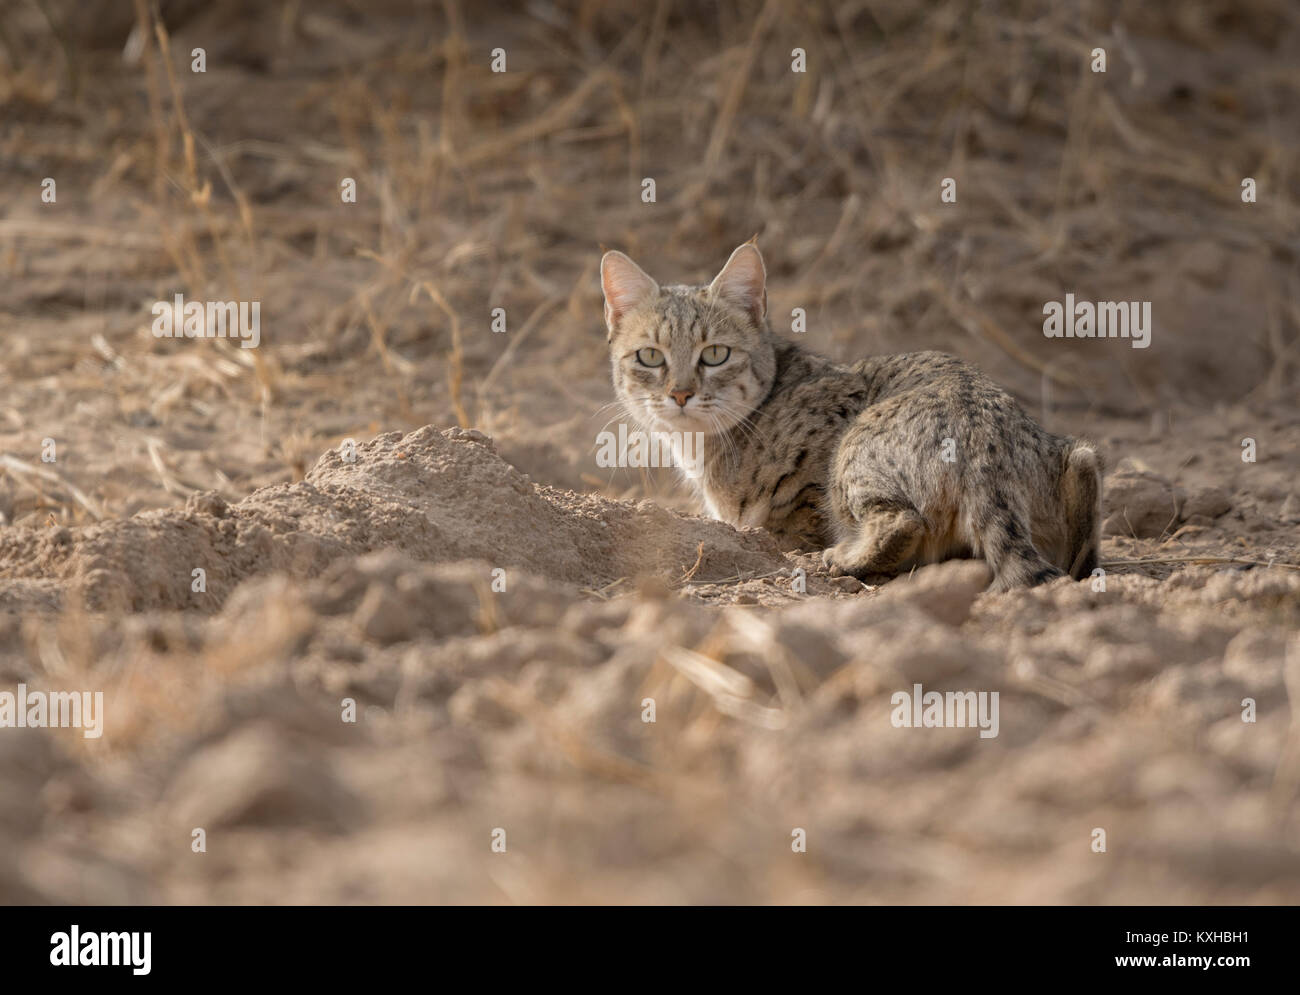 Alert Desert Cat Stock Photo